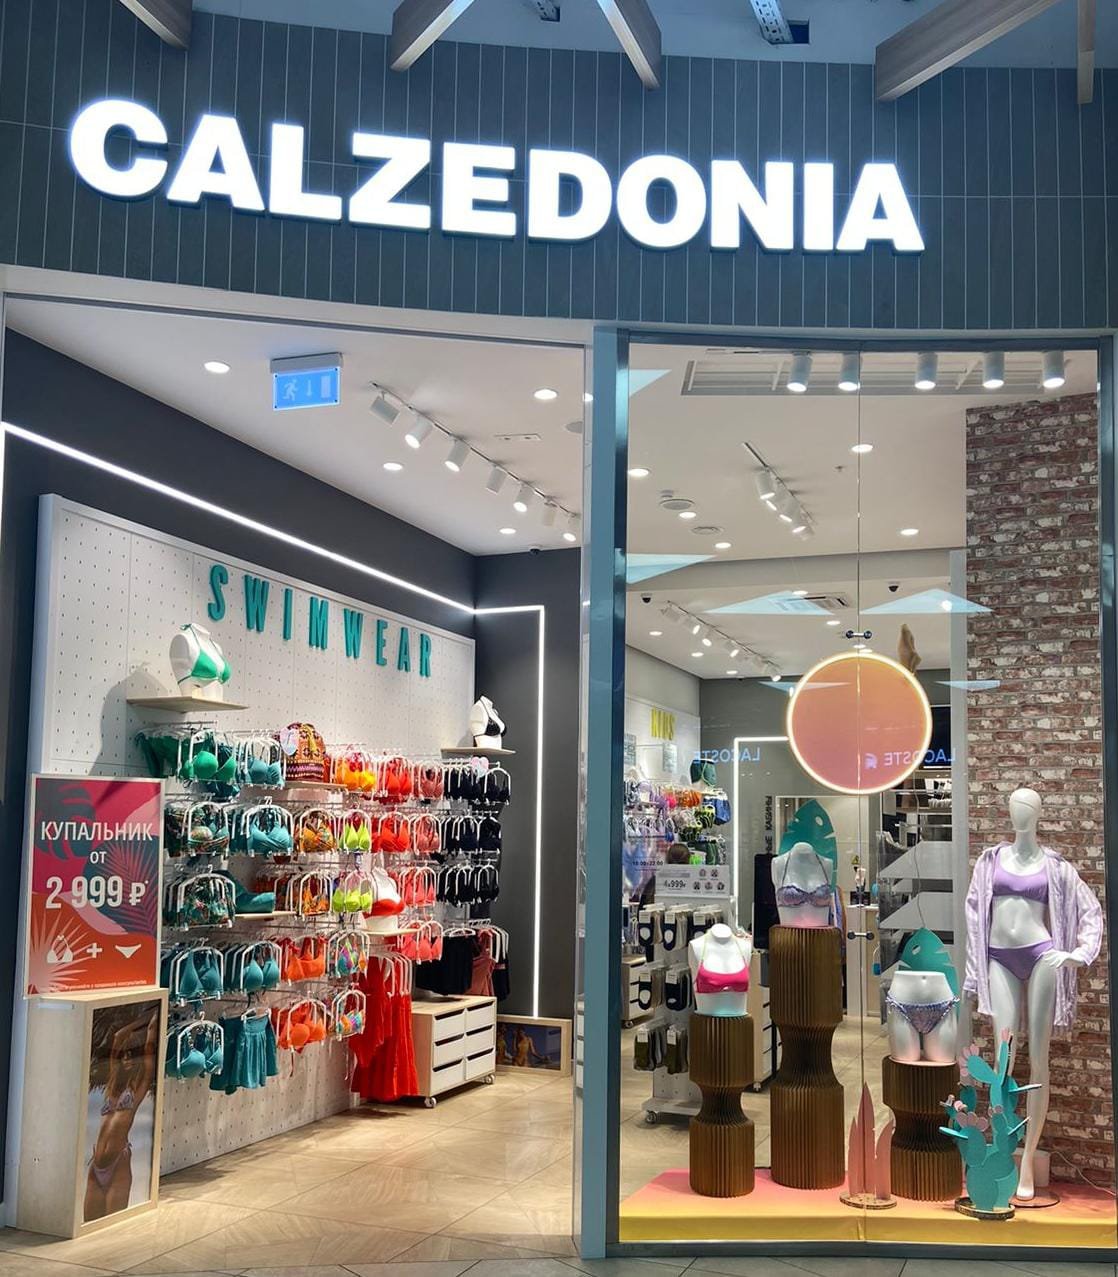 Calzedonia Calzedonia ТЦ "Казань Молл"